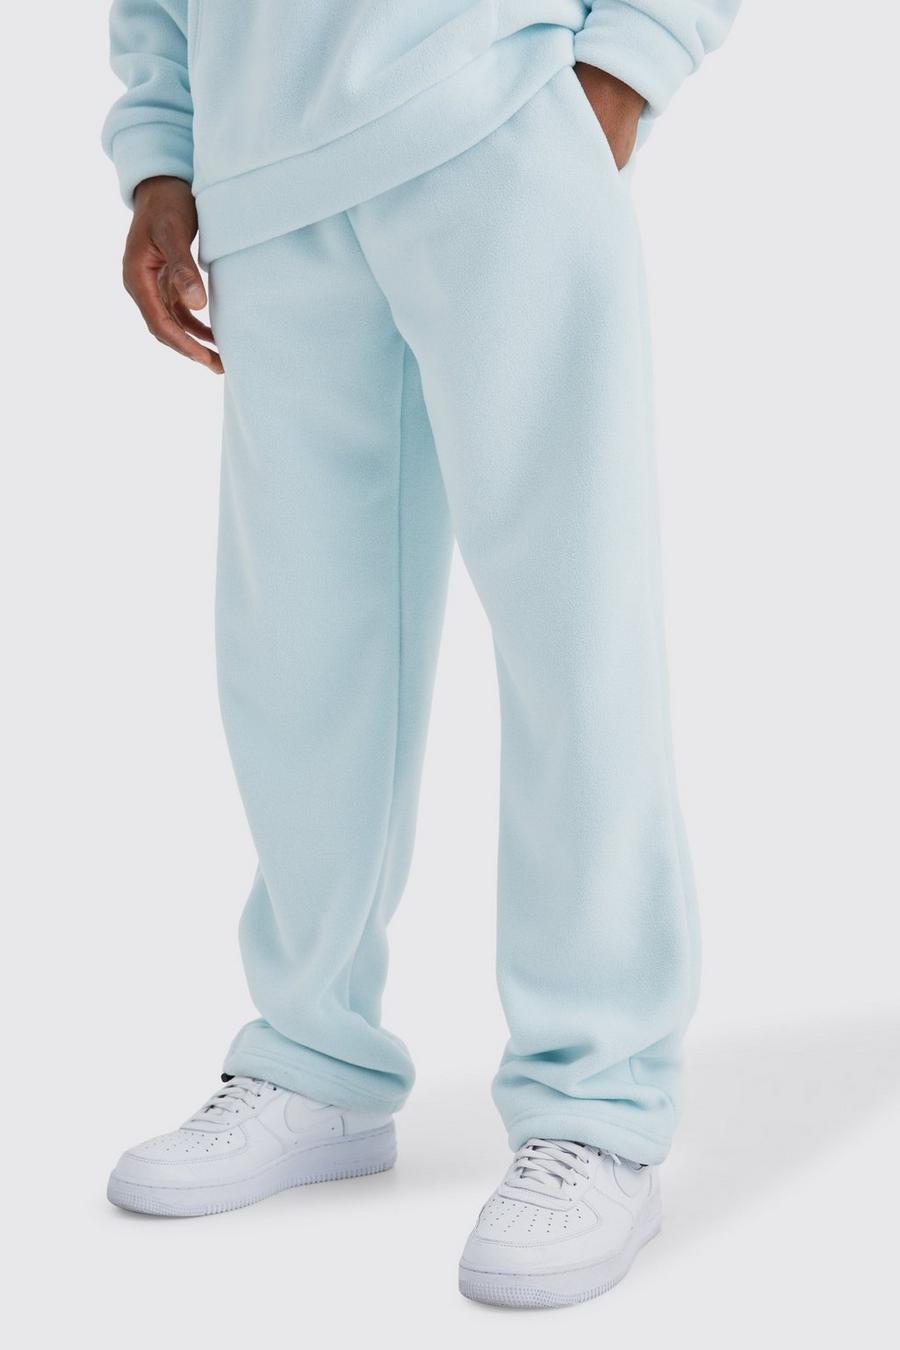 Pantalón deportivo holgado de microforro polar, Light blue